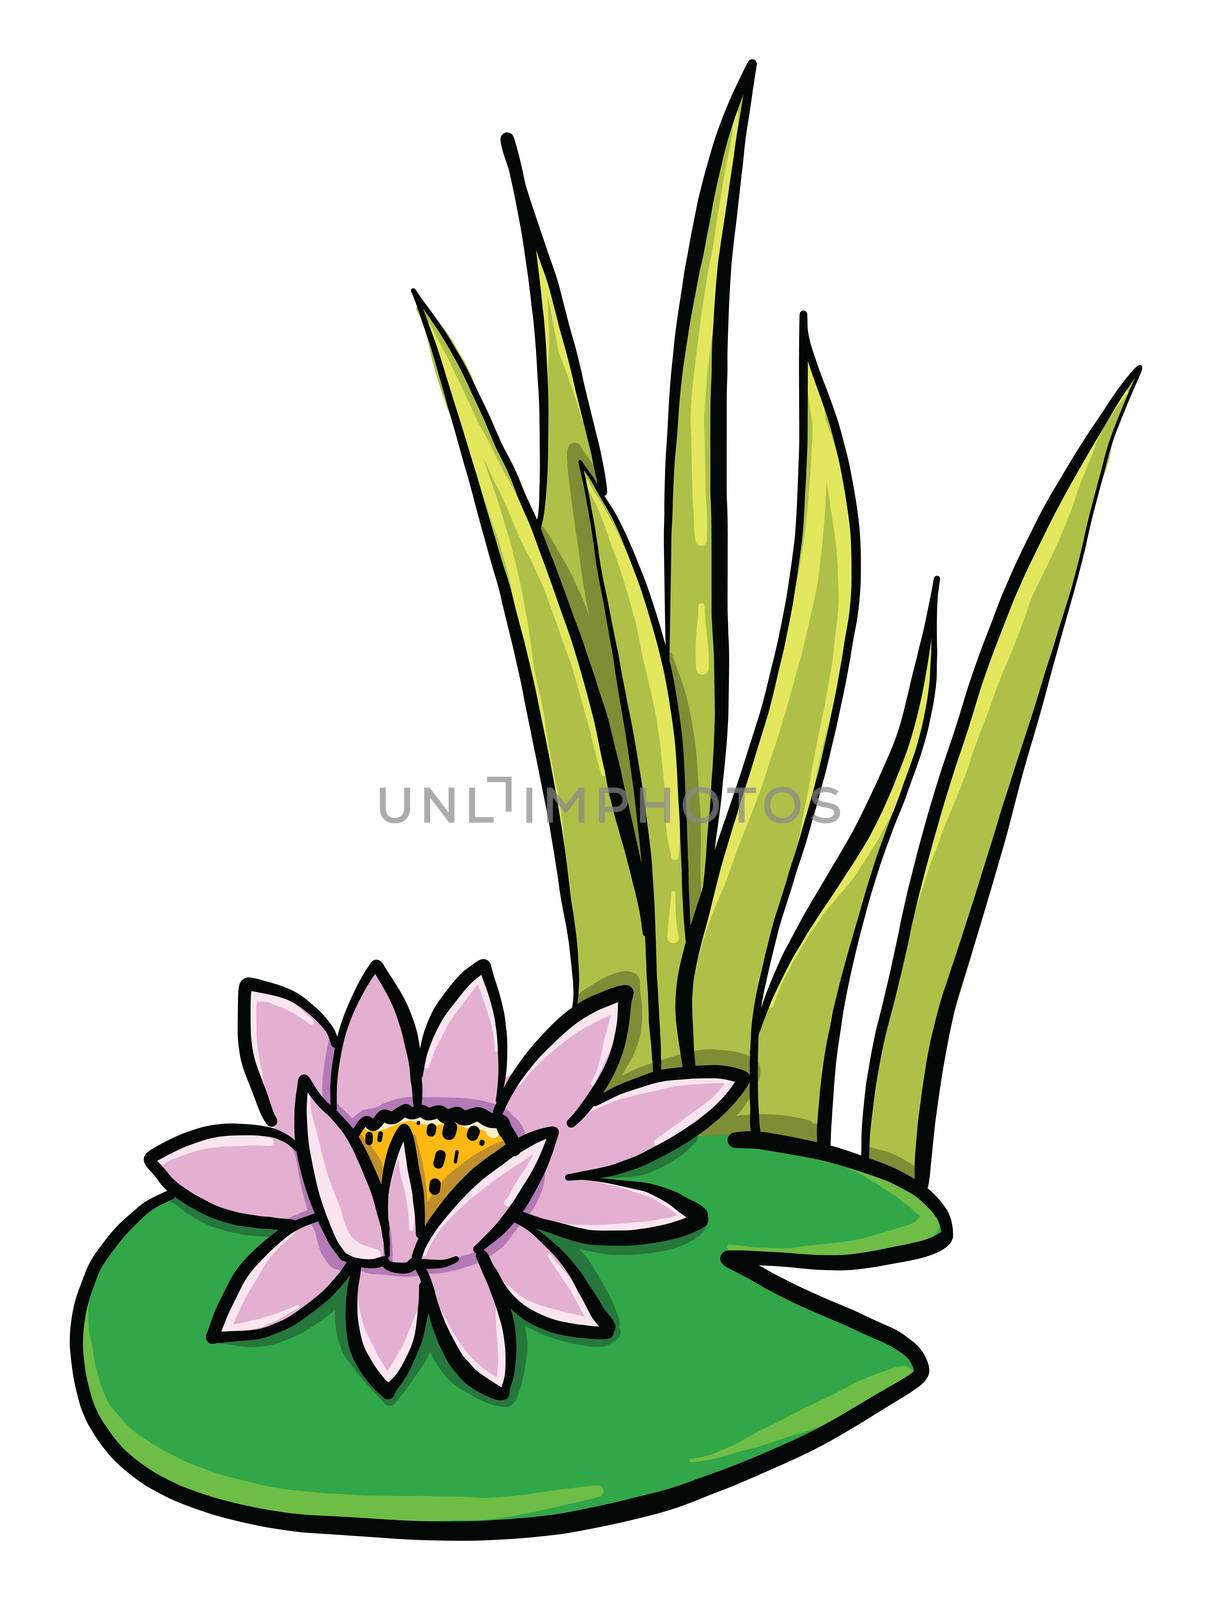 Lotus flower , illustration, vector on white background by Morphart